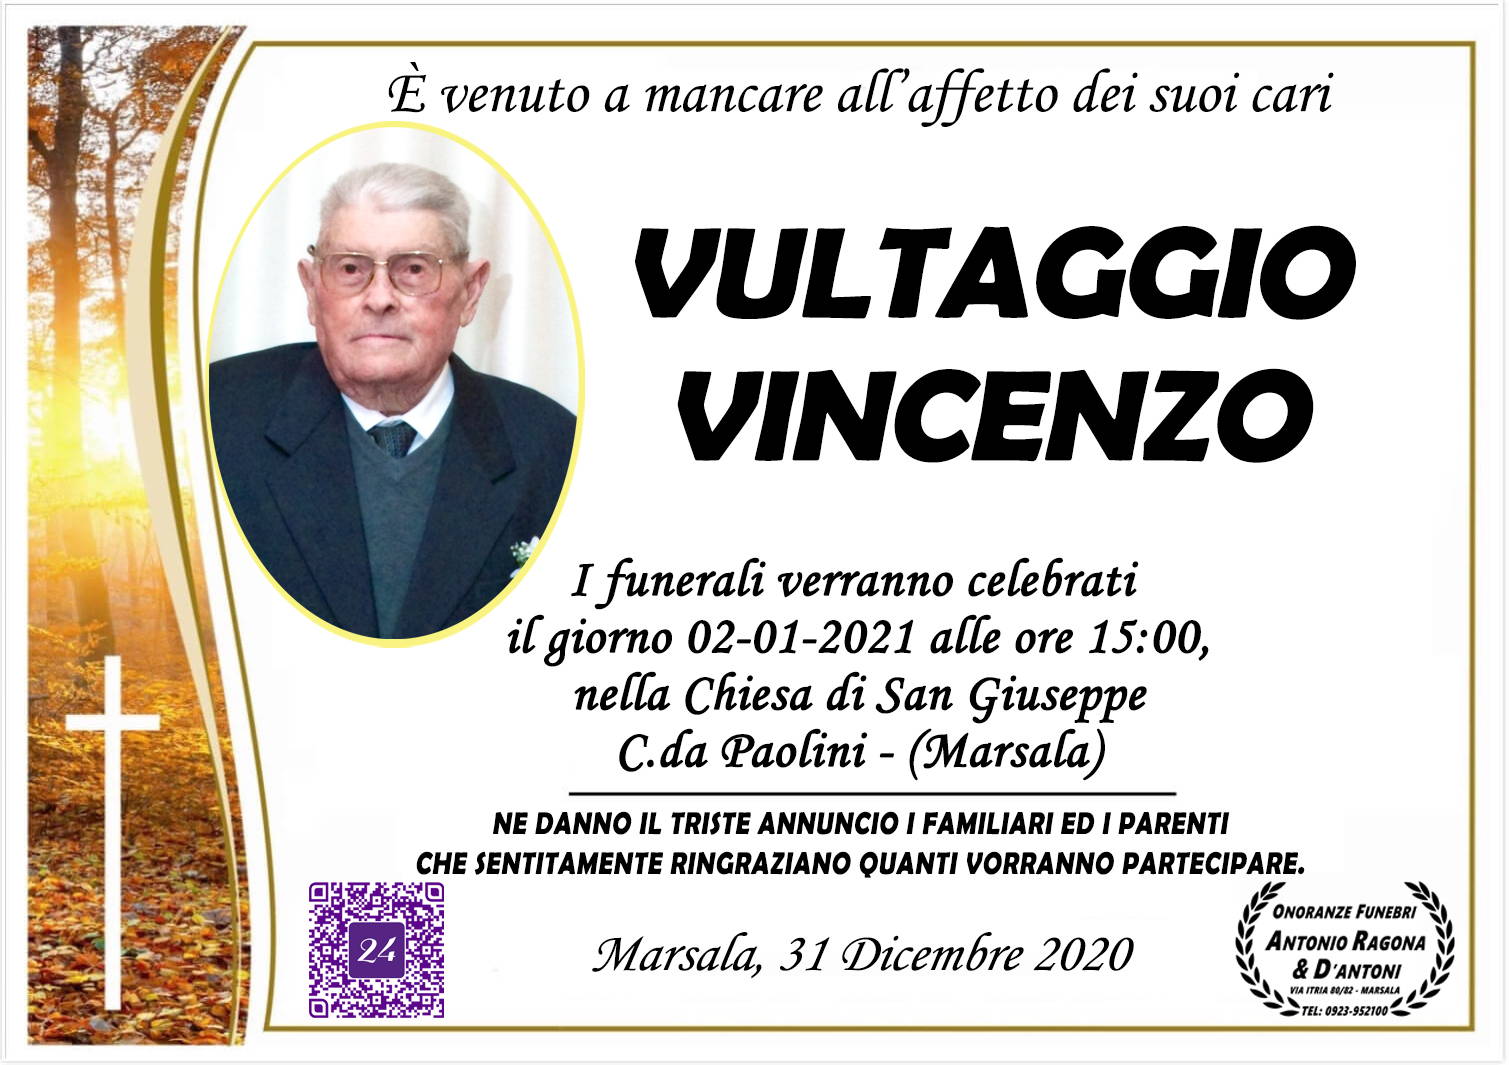 Vincenzo Vultaggio